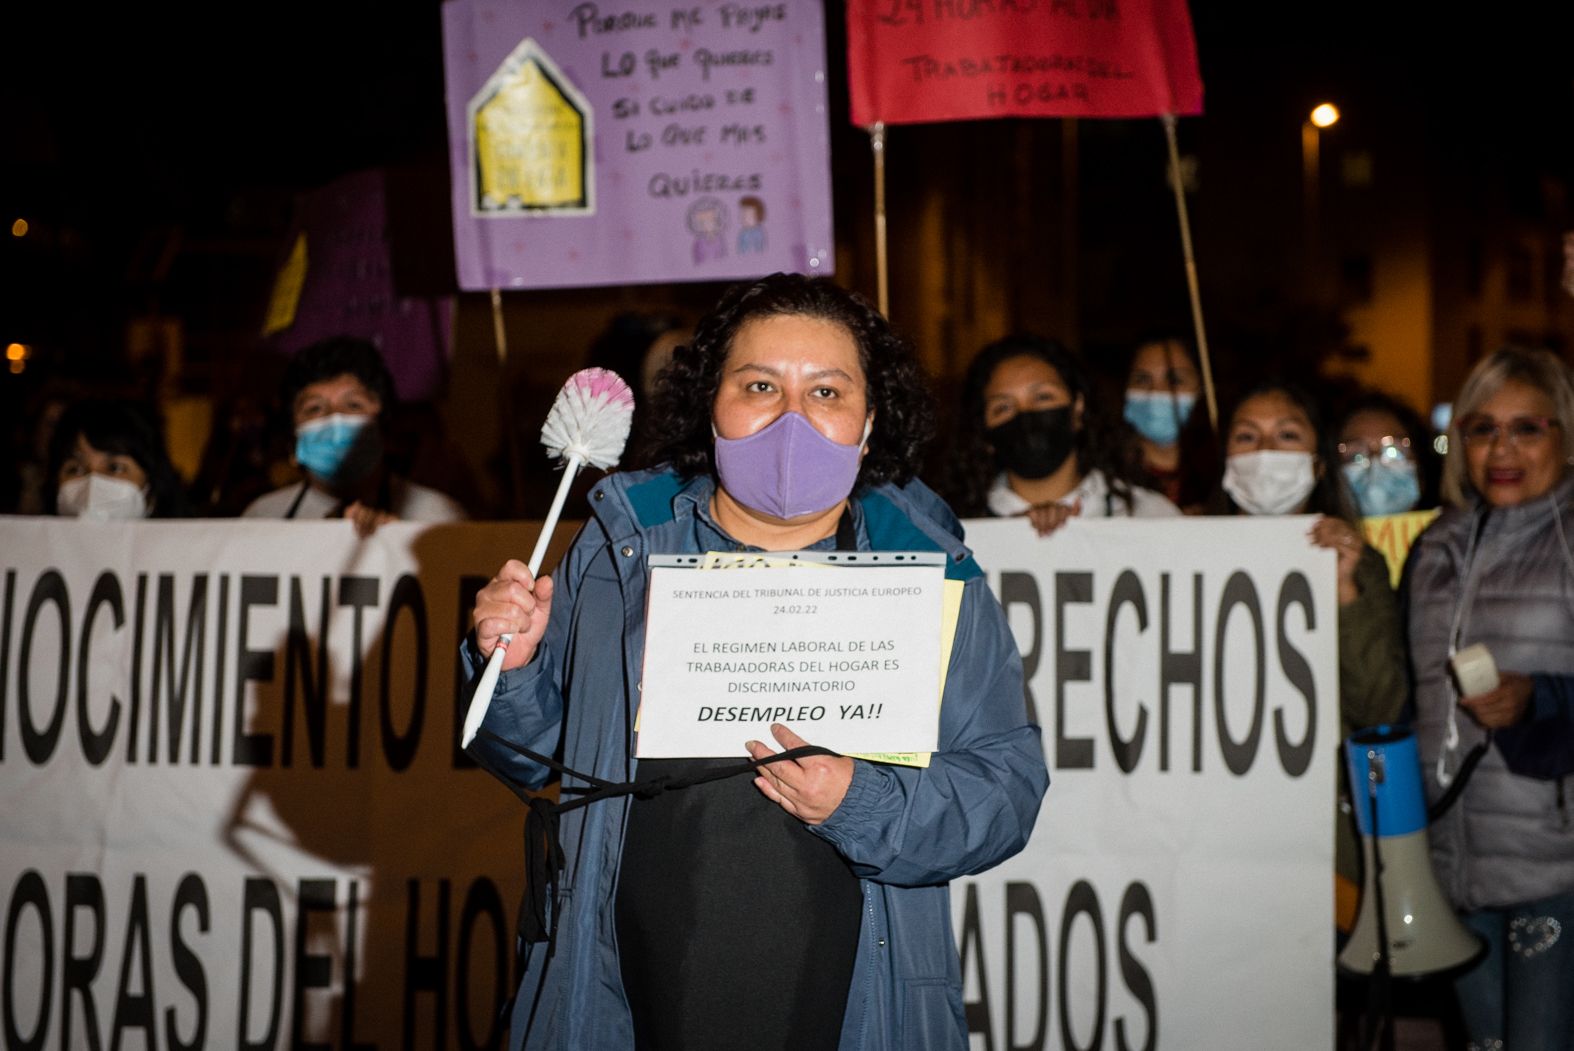 Jacqueline Amaya, portavoz de la Asociación de Trabajadoras y Trabajadores del Hogar de Sevilla, durante la manifestación del 8M de 2022.